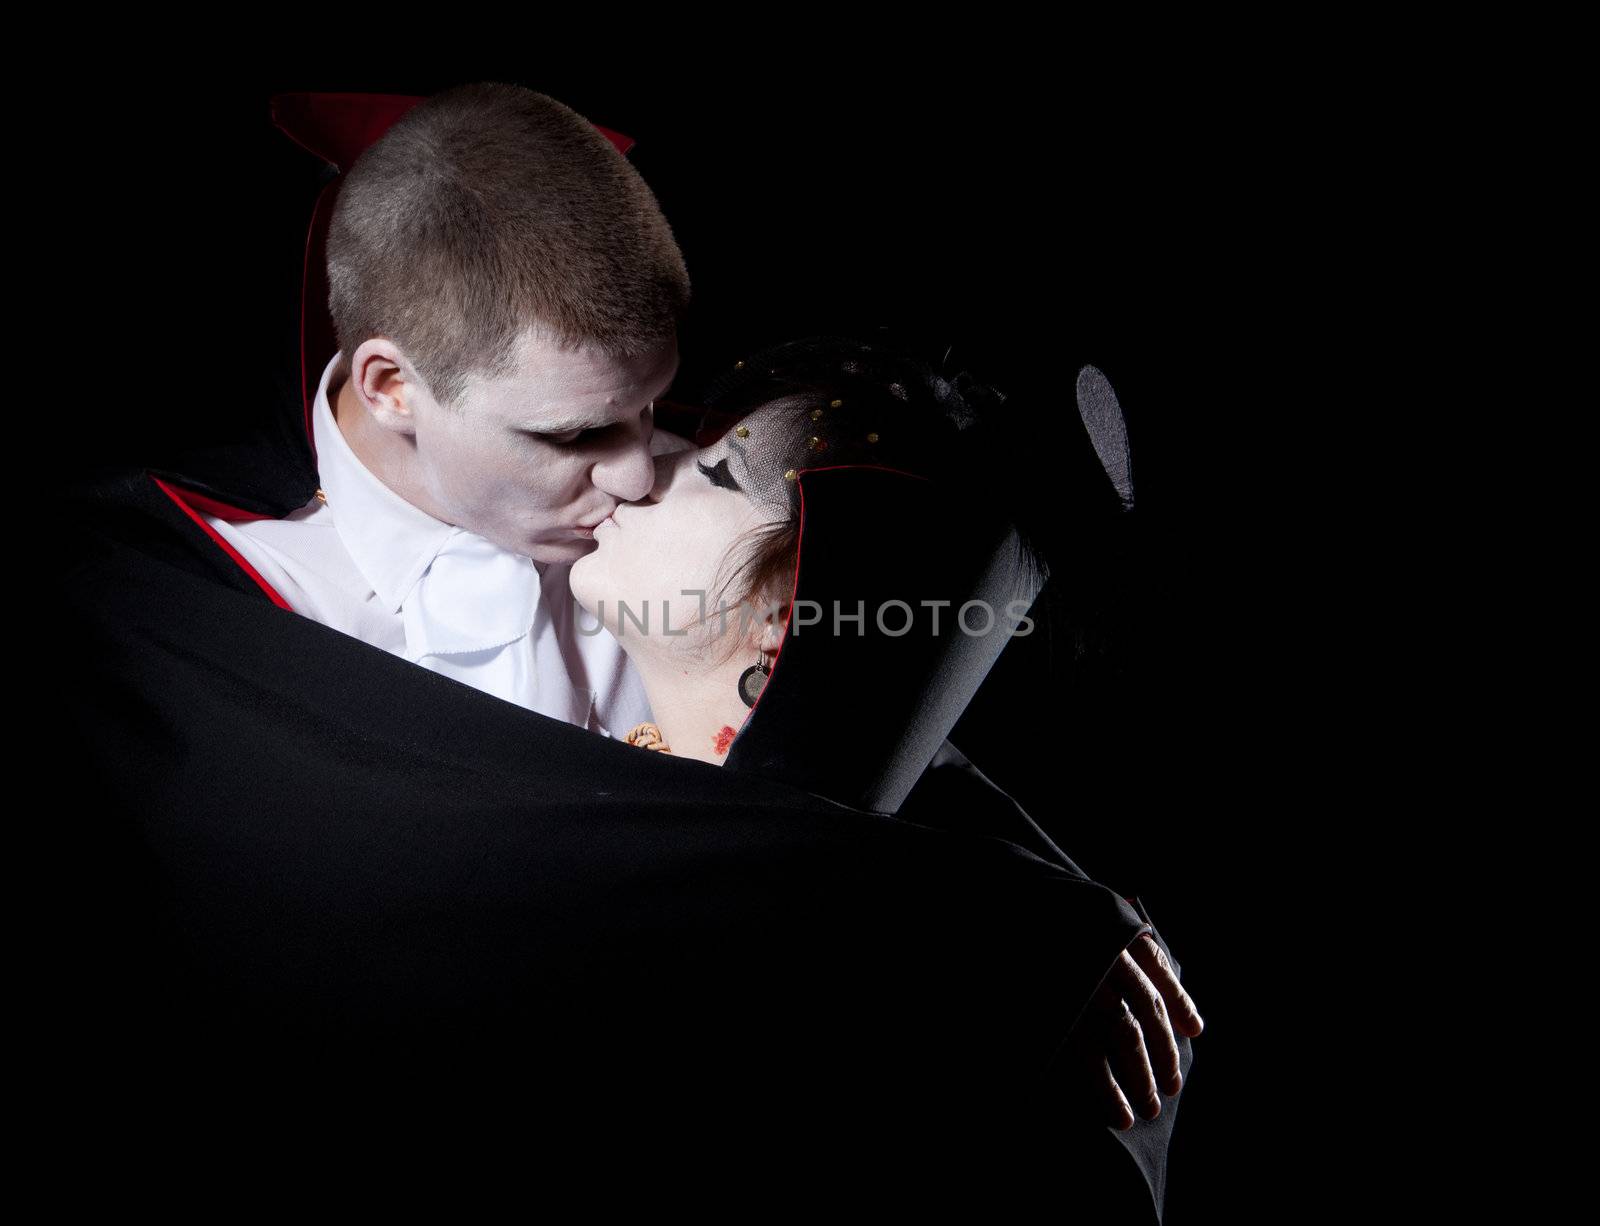 vampire couple kiss by Jerax